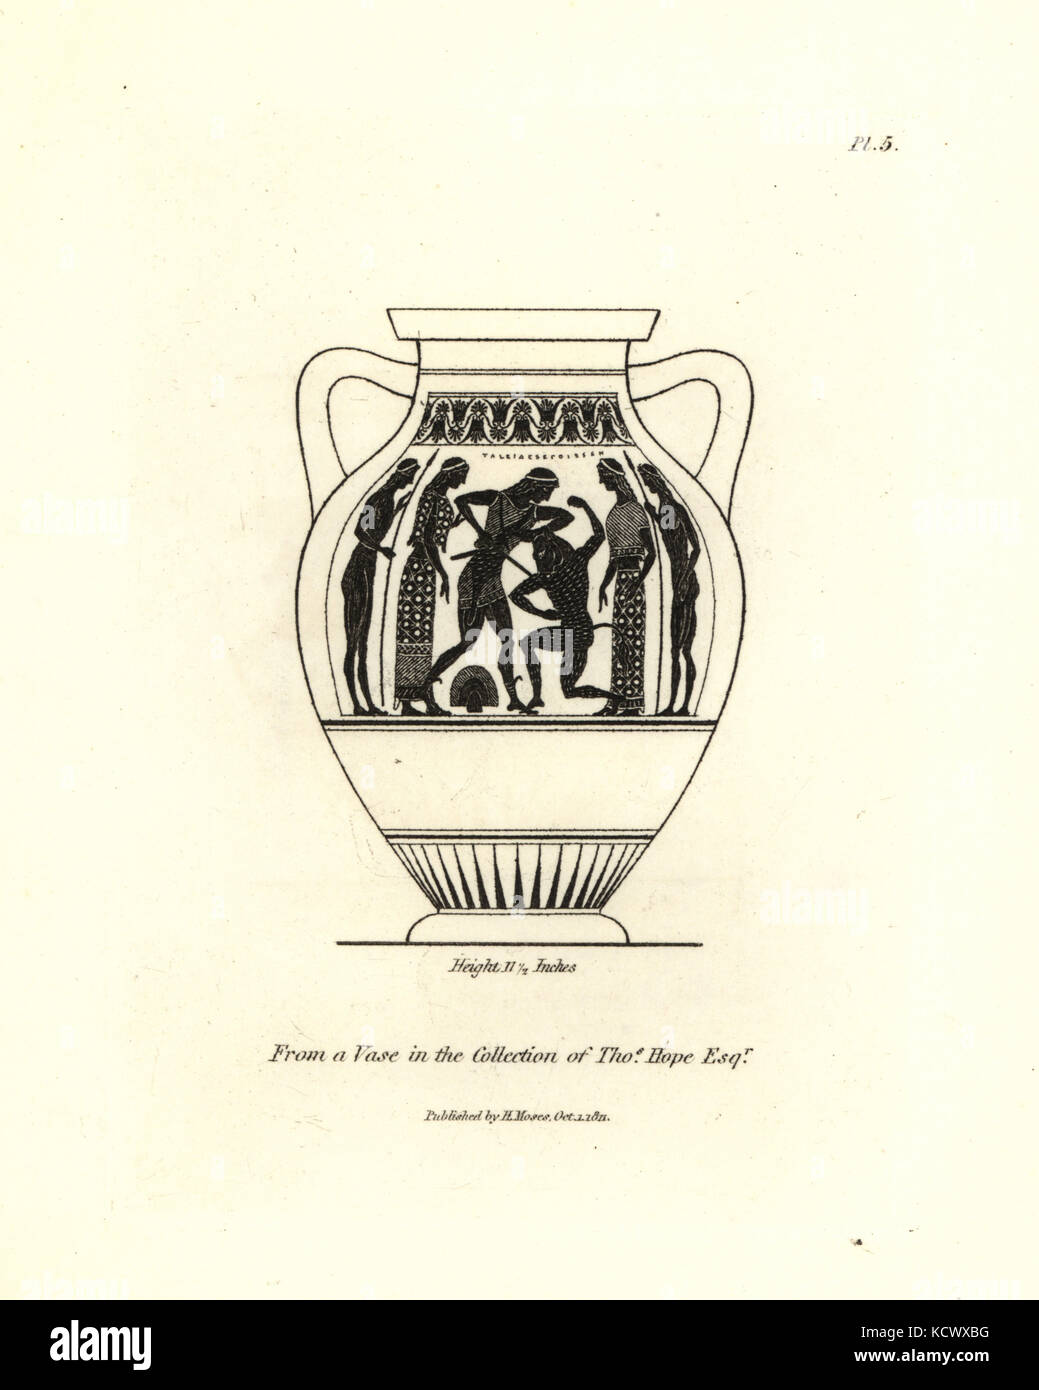 L'inscription de Thésée tuant le minotaure d'un vase de la collection de  Thomas espère. gravure sur cuivre par Henry Moïse à partir d'une collection  de vases antiques, autels, etc., Londres, 1814 Photo